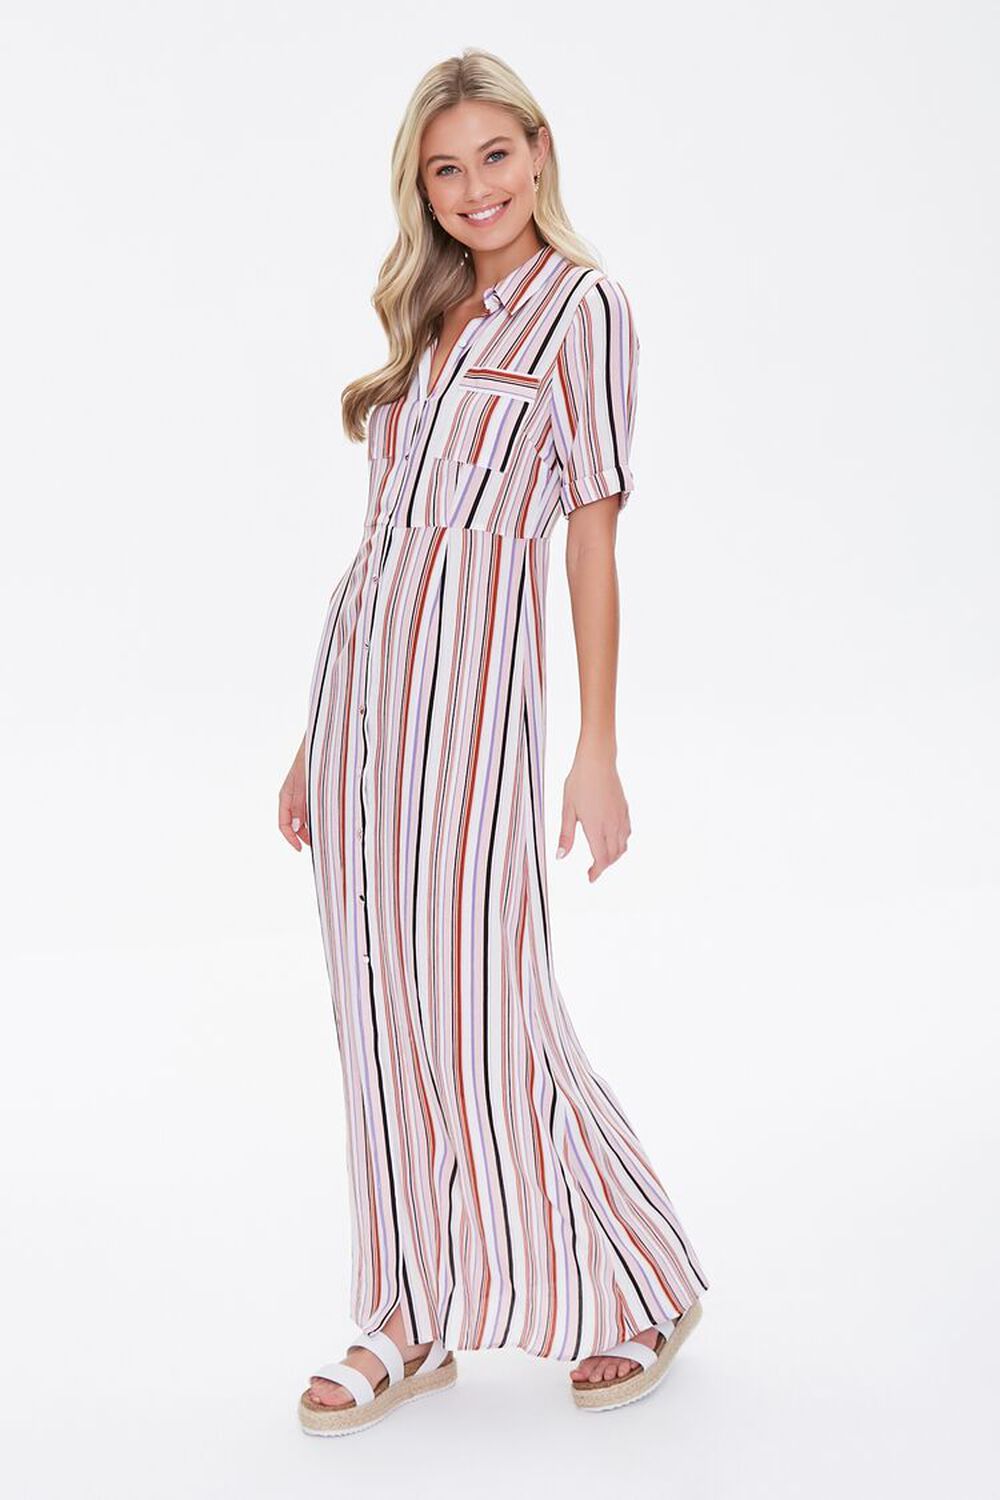 BLUSH/MULTI Multicolor Striped Dress, image 1